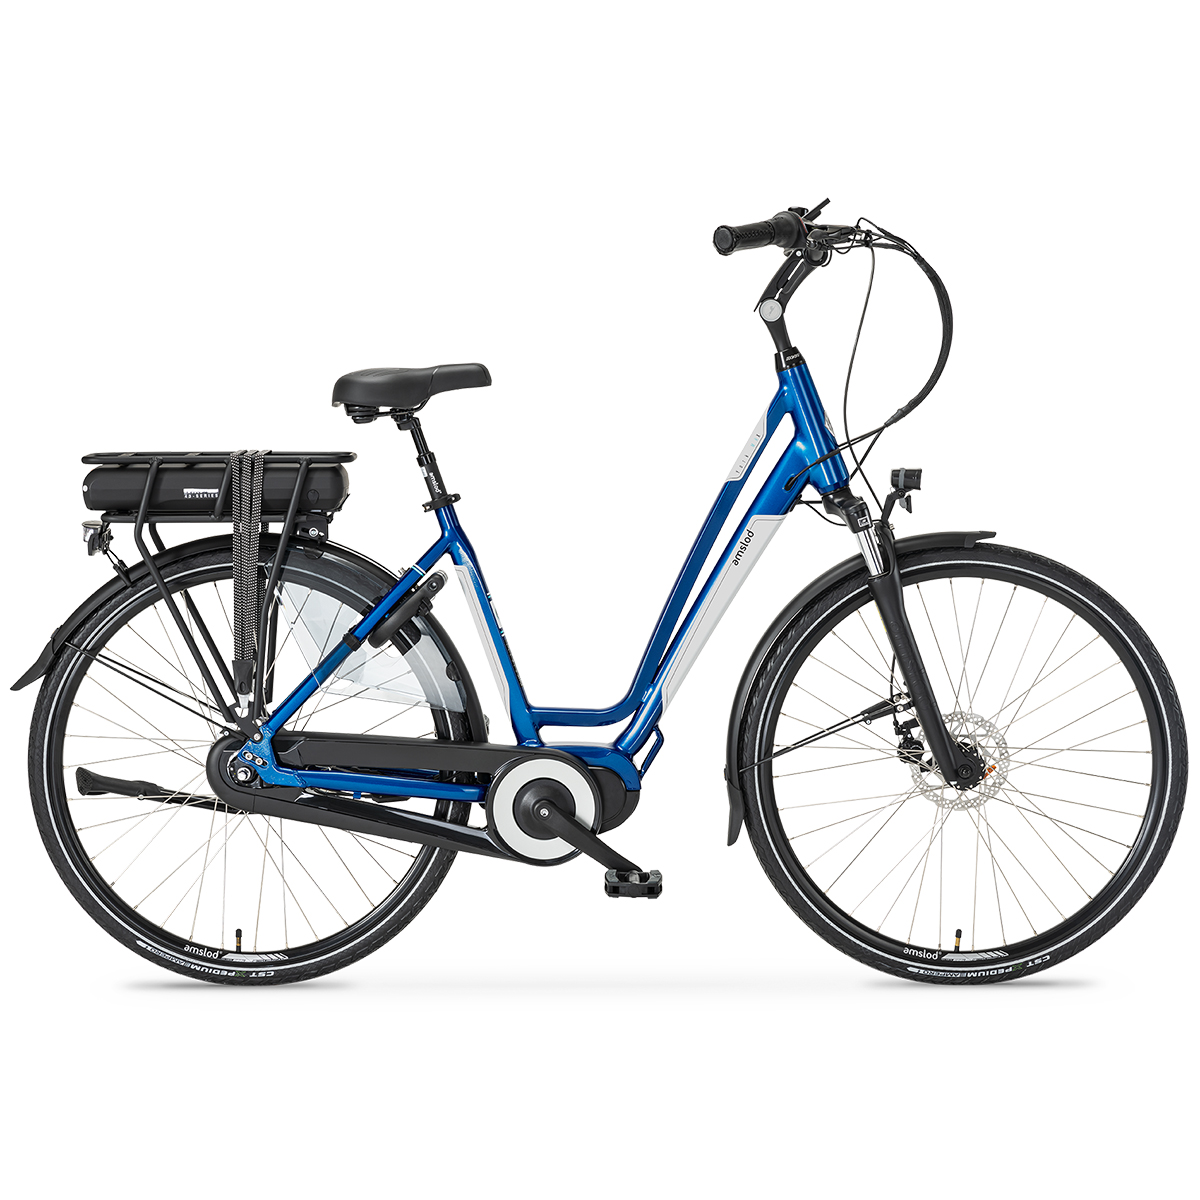 Afbeelding Amslod elektrische fiets york active classic electrische fiets kopen 2